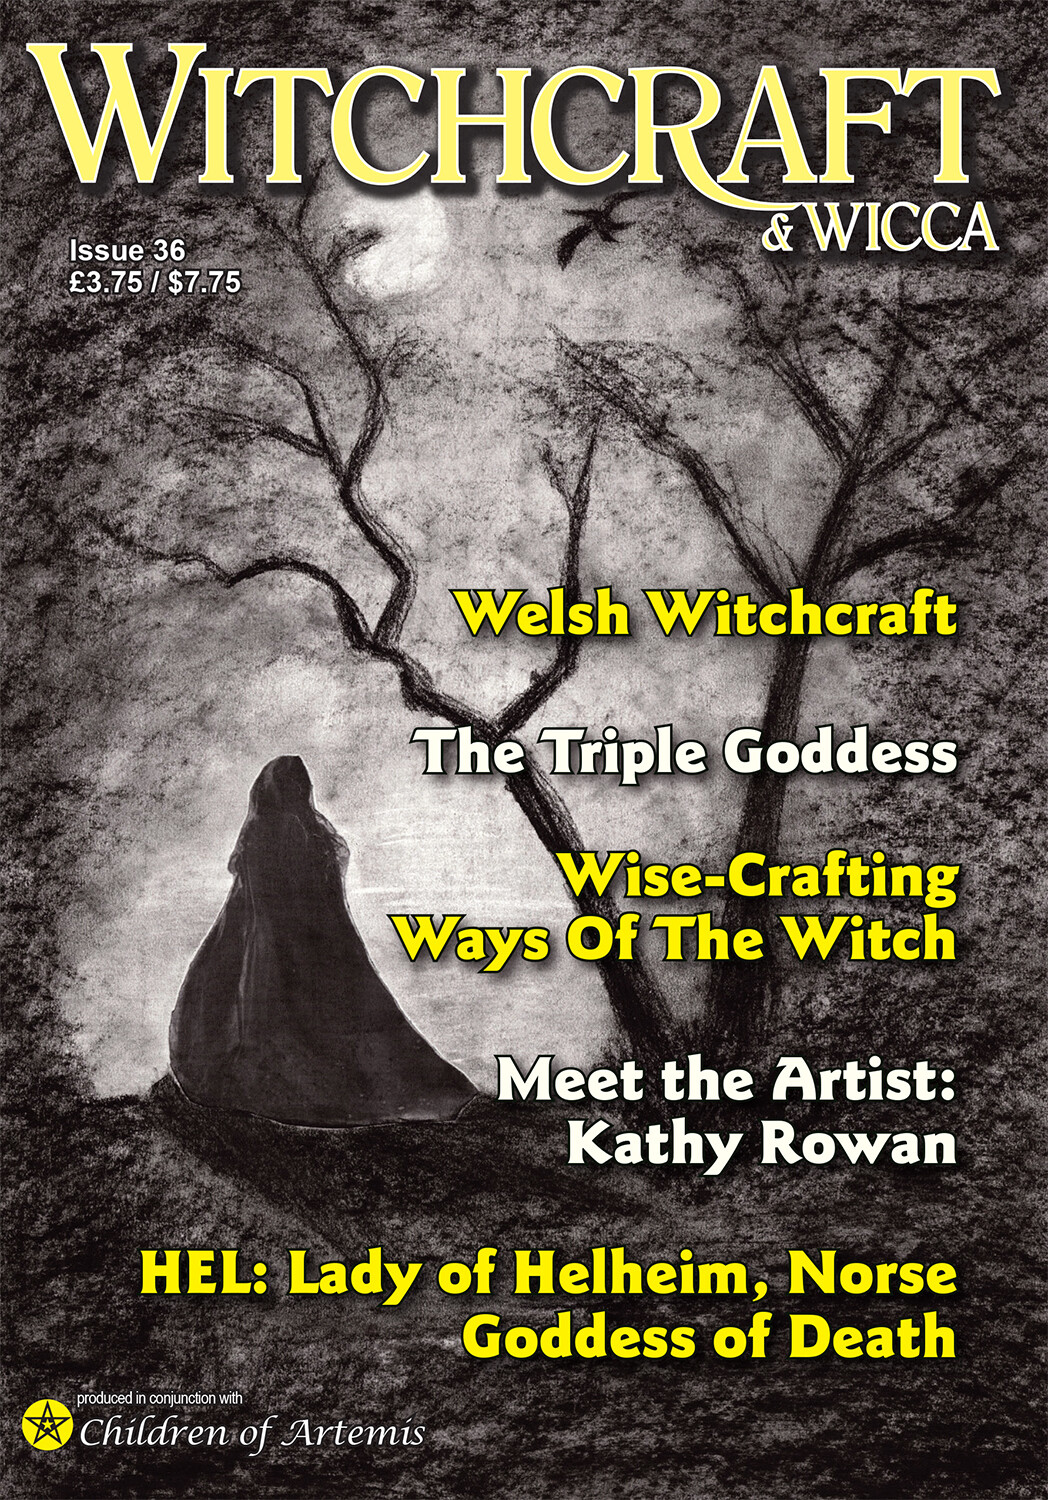 Witchcraft & Wicca Magazine Issue 36